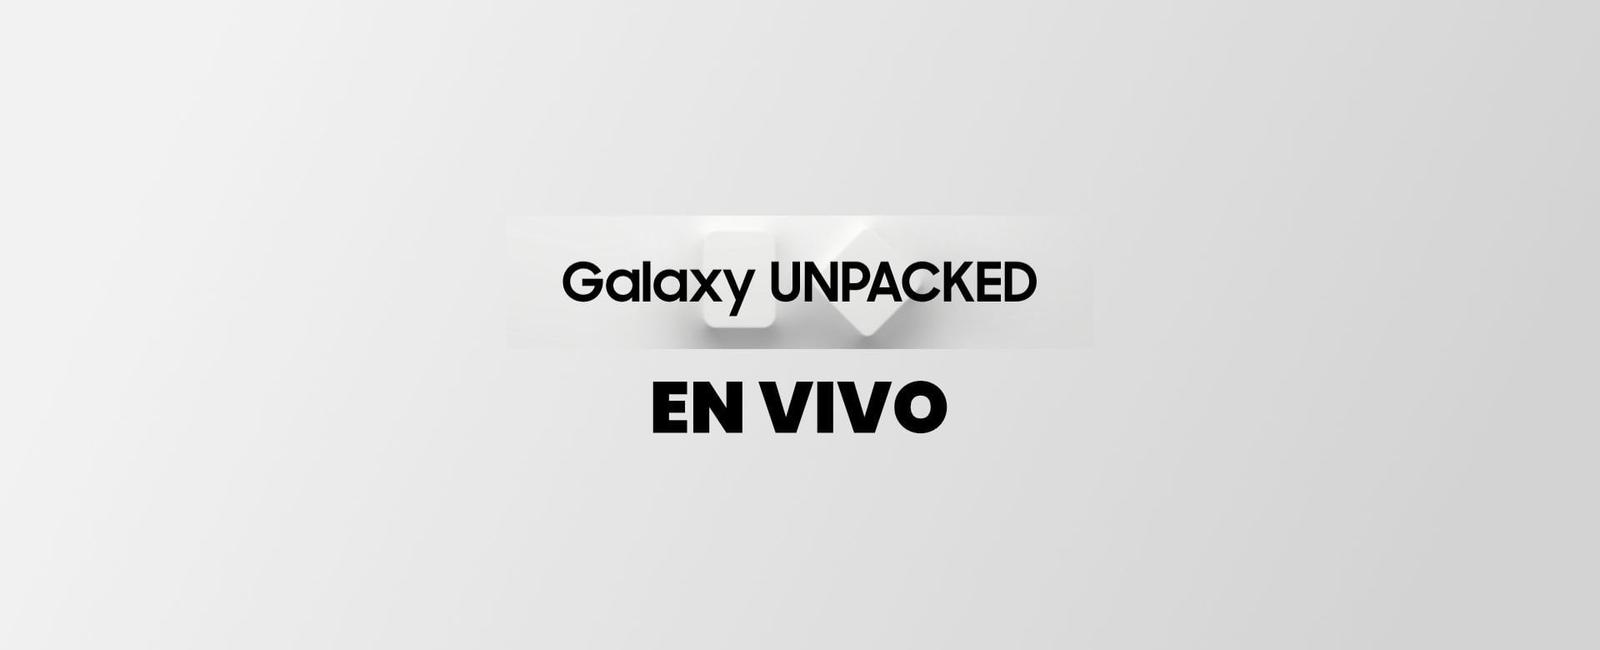 Galaxy Unpacked 2020 en vivo